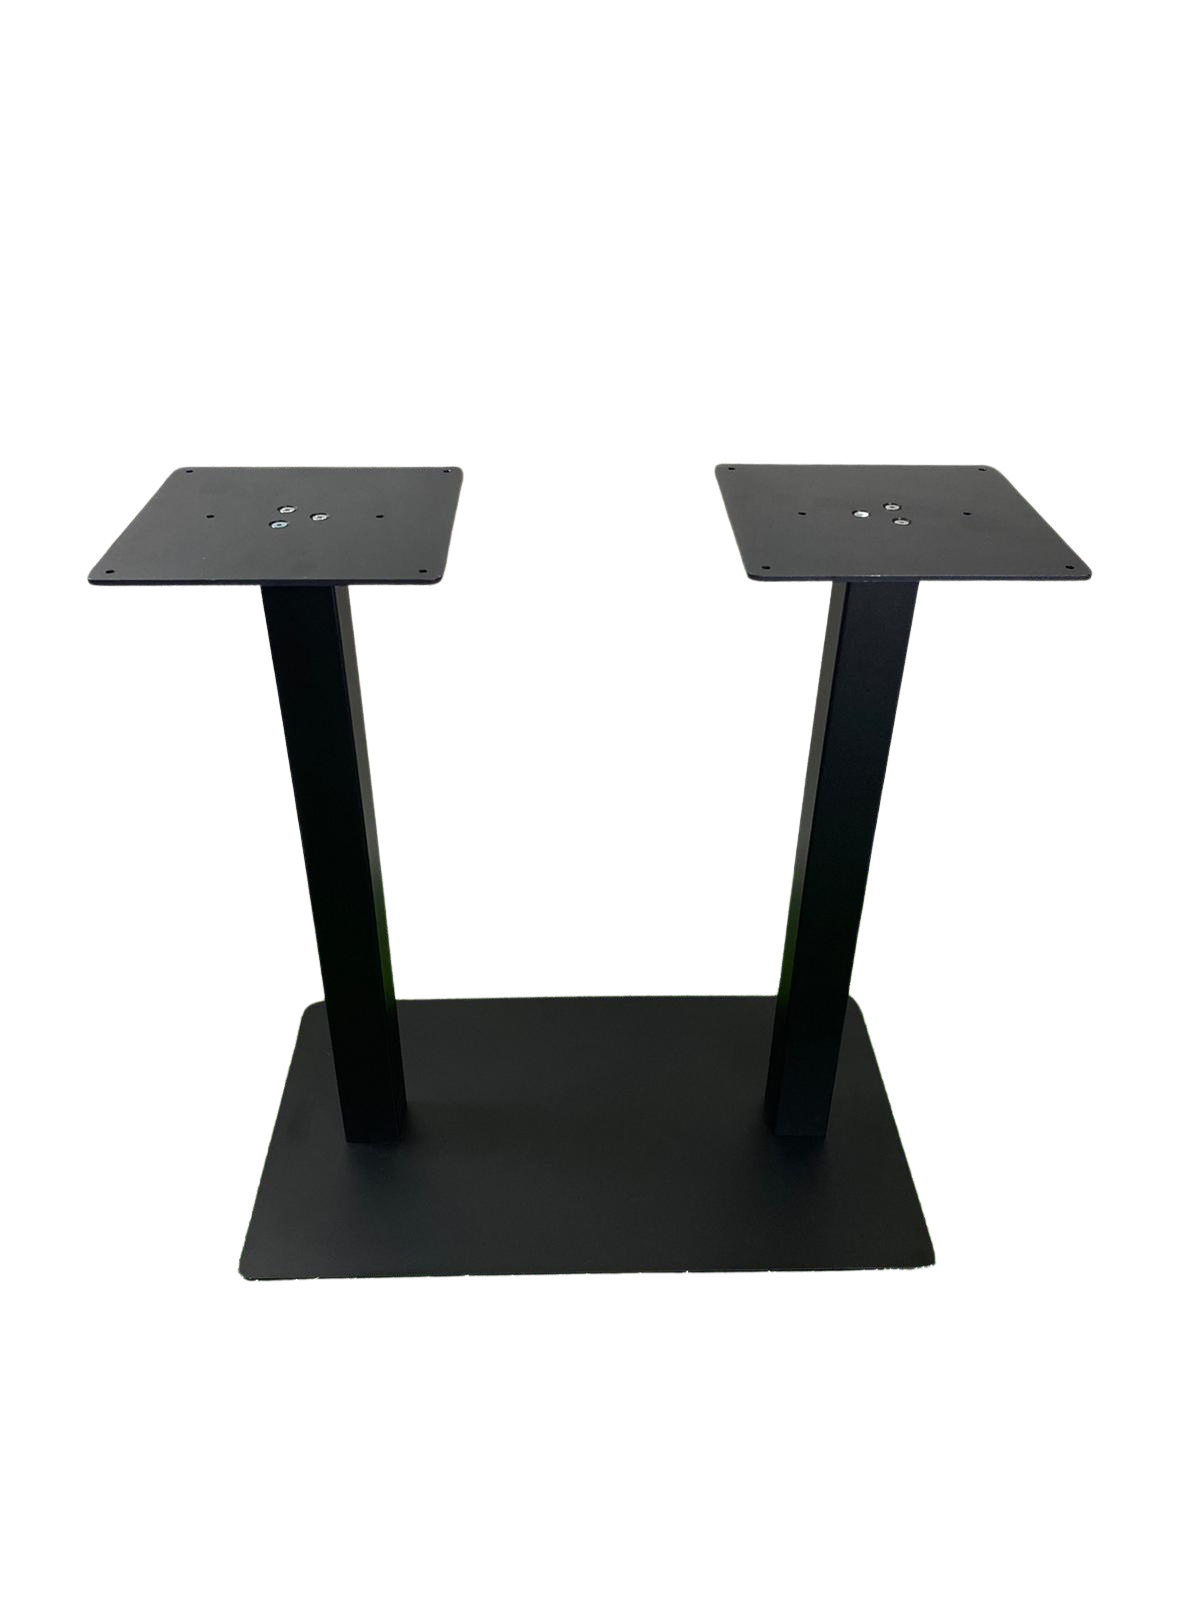 Base de mesa doble de hierro color negro